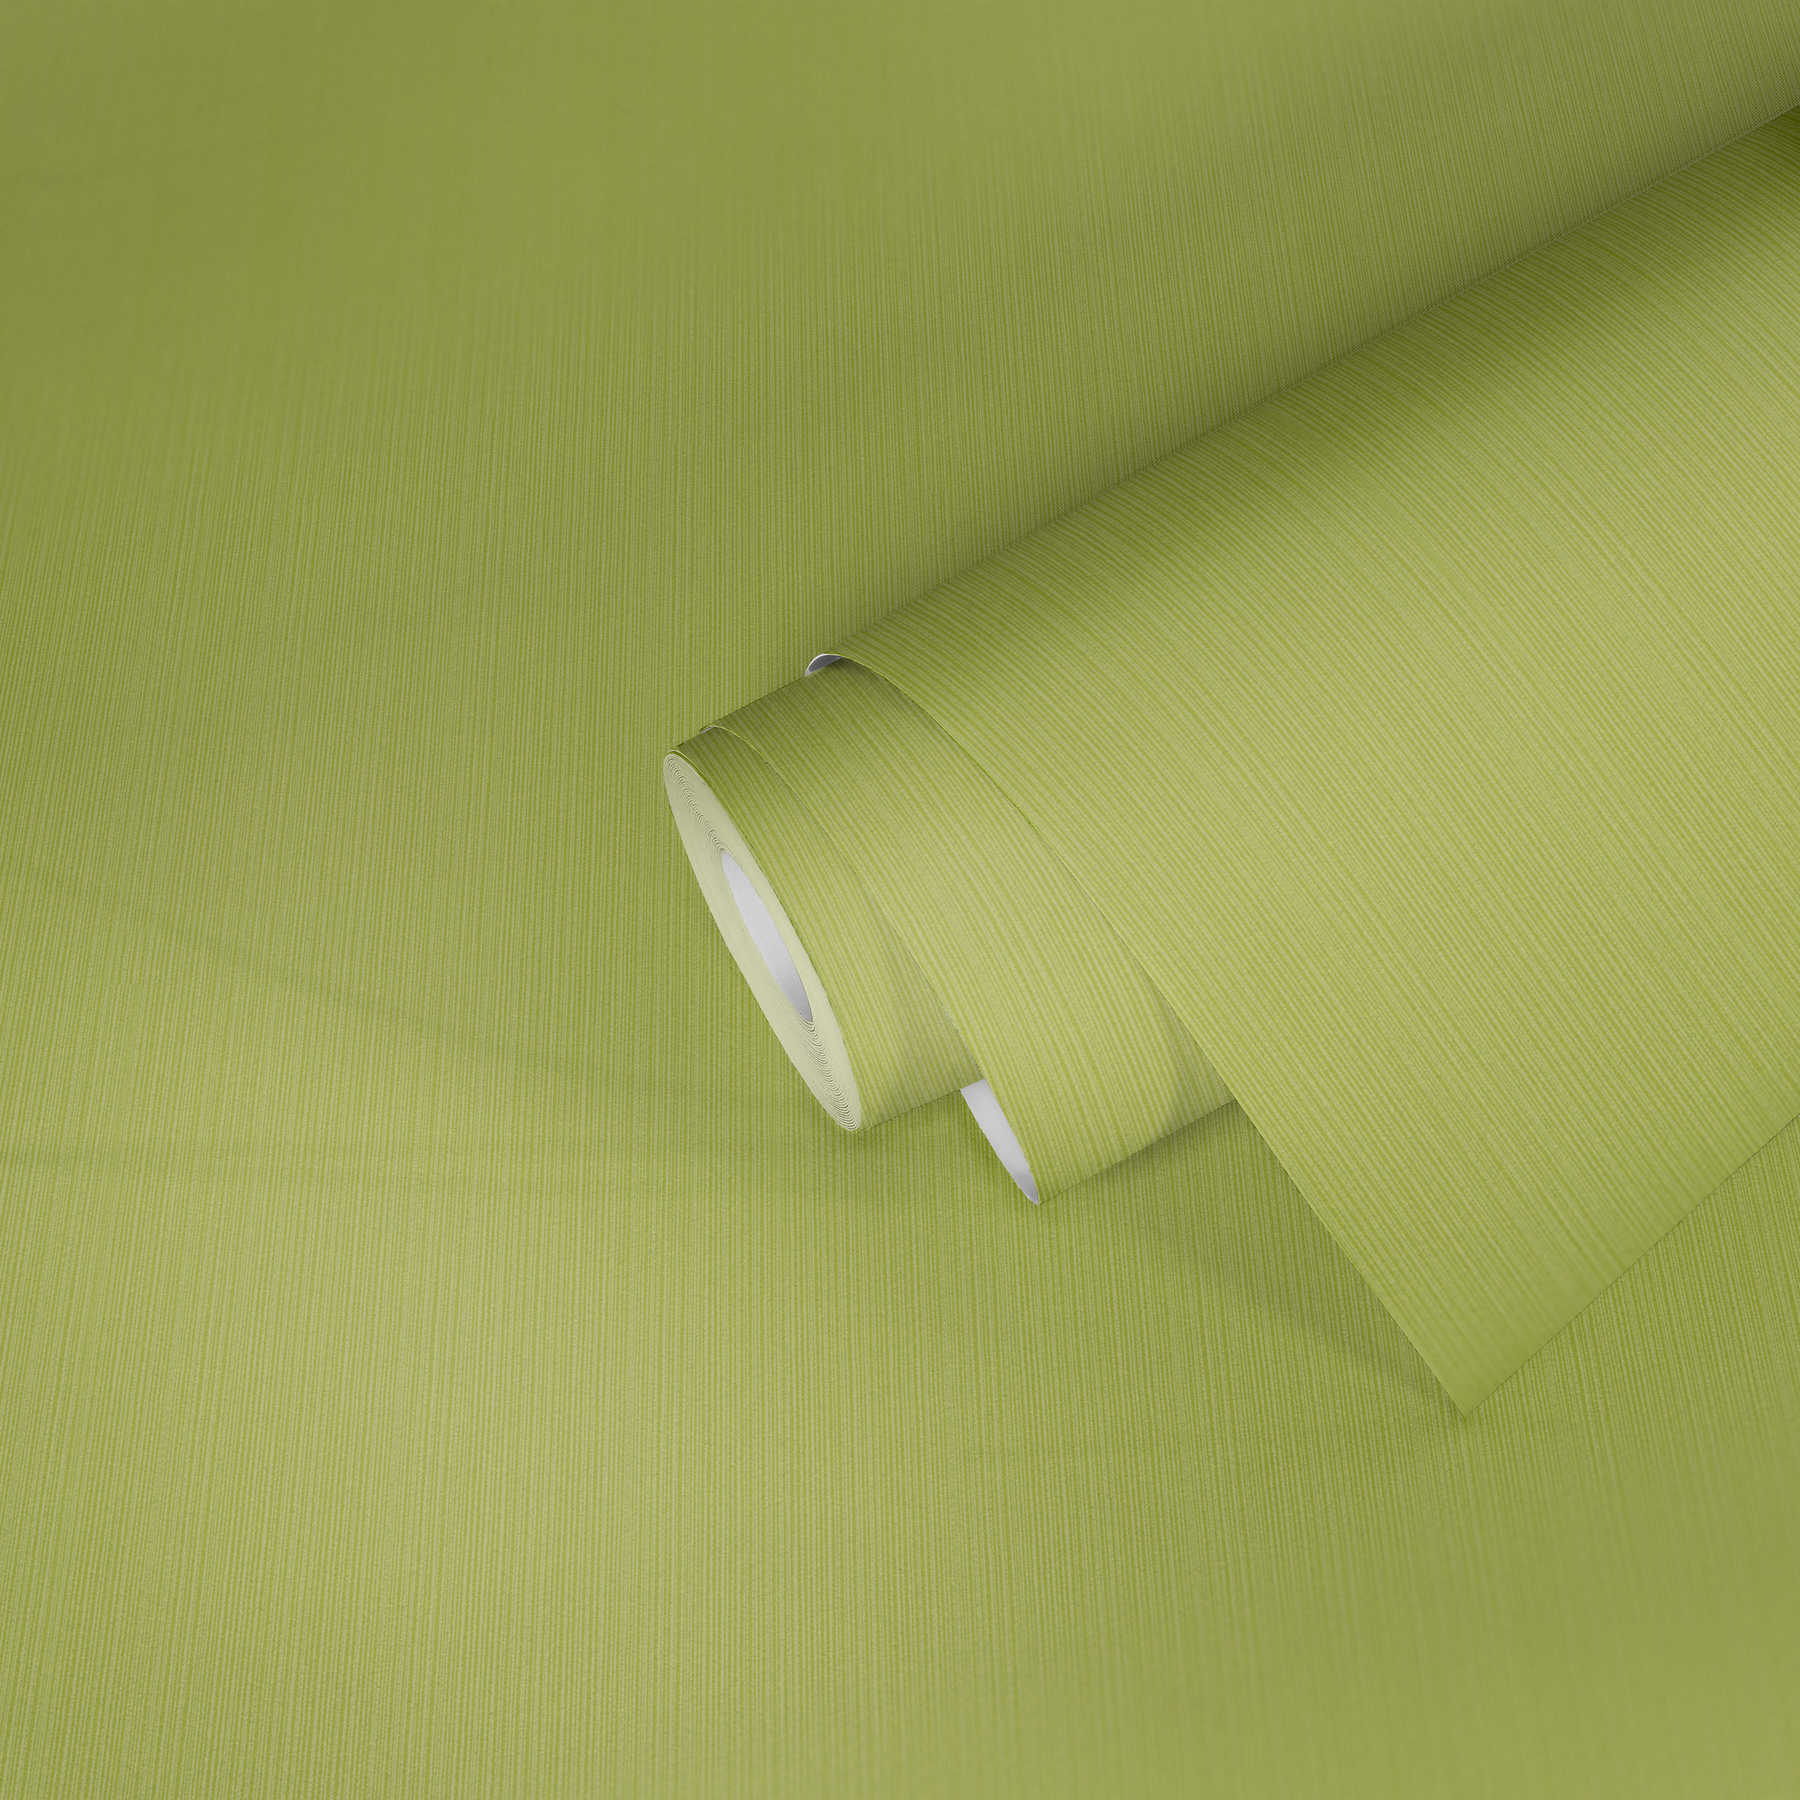             Papier peint vert citron uni, avec effet structuré rayé
        